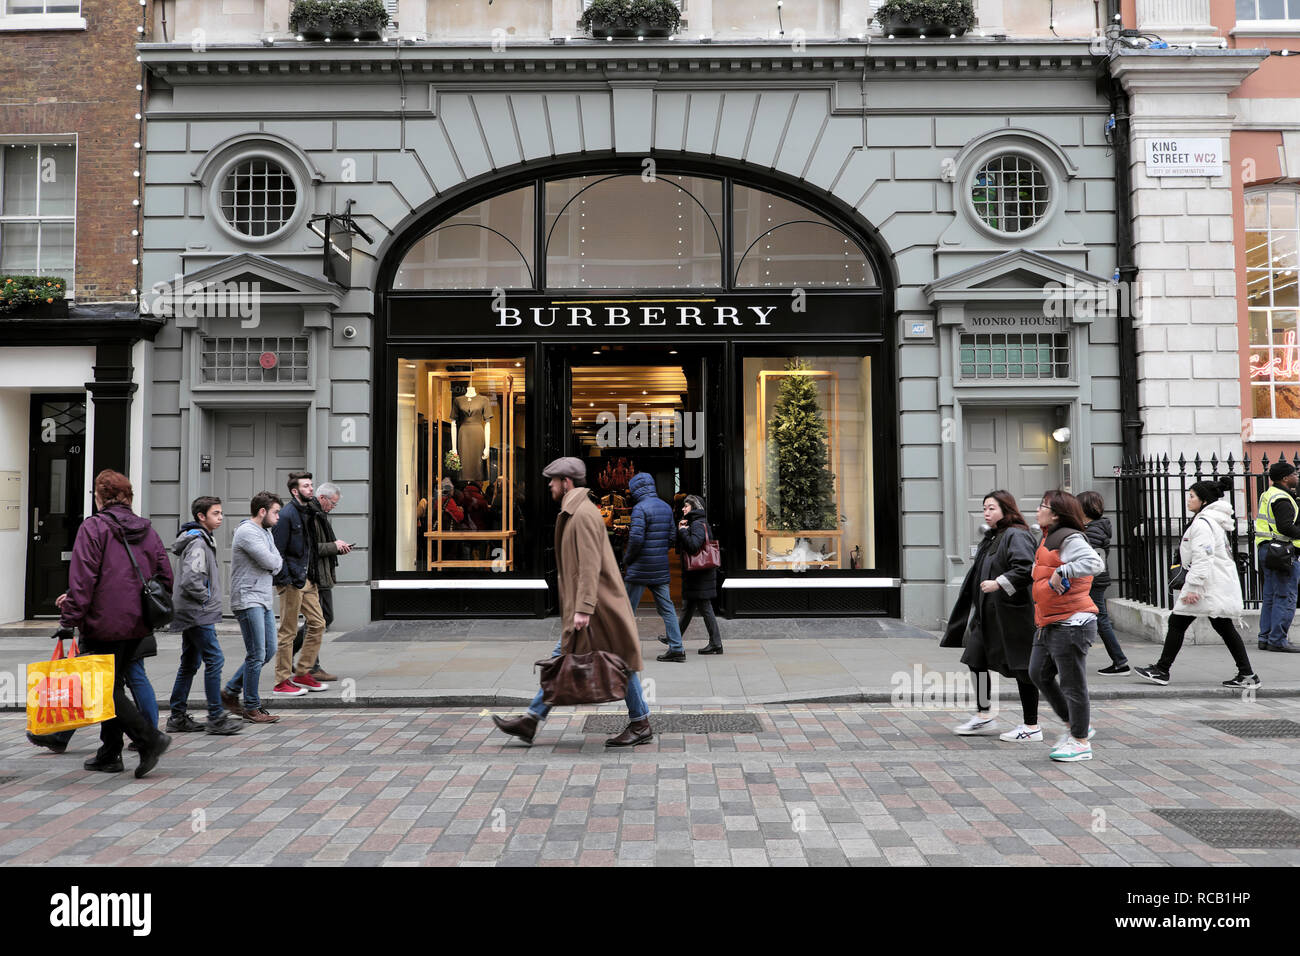 Les gens qui font des courses et l'homme qui porte un sac en passant devant le magasin Burberry extérieur à l'heure de Noël à Covent Garden Londres Angleterre Royaume-Uni KATHY DEWITT Banque D'Images